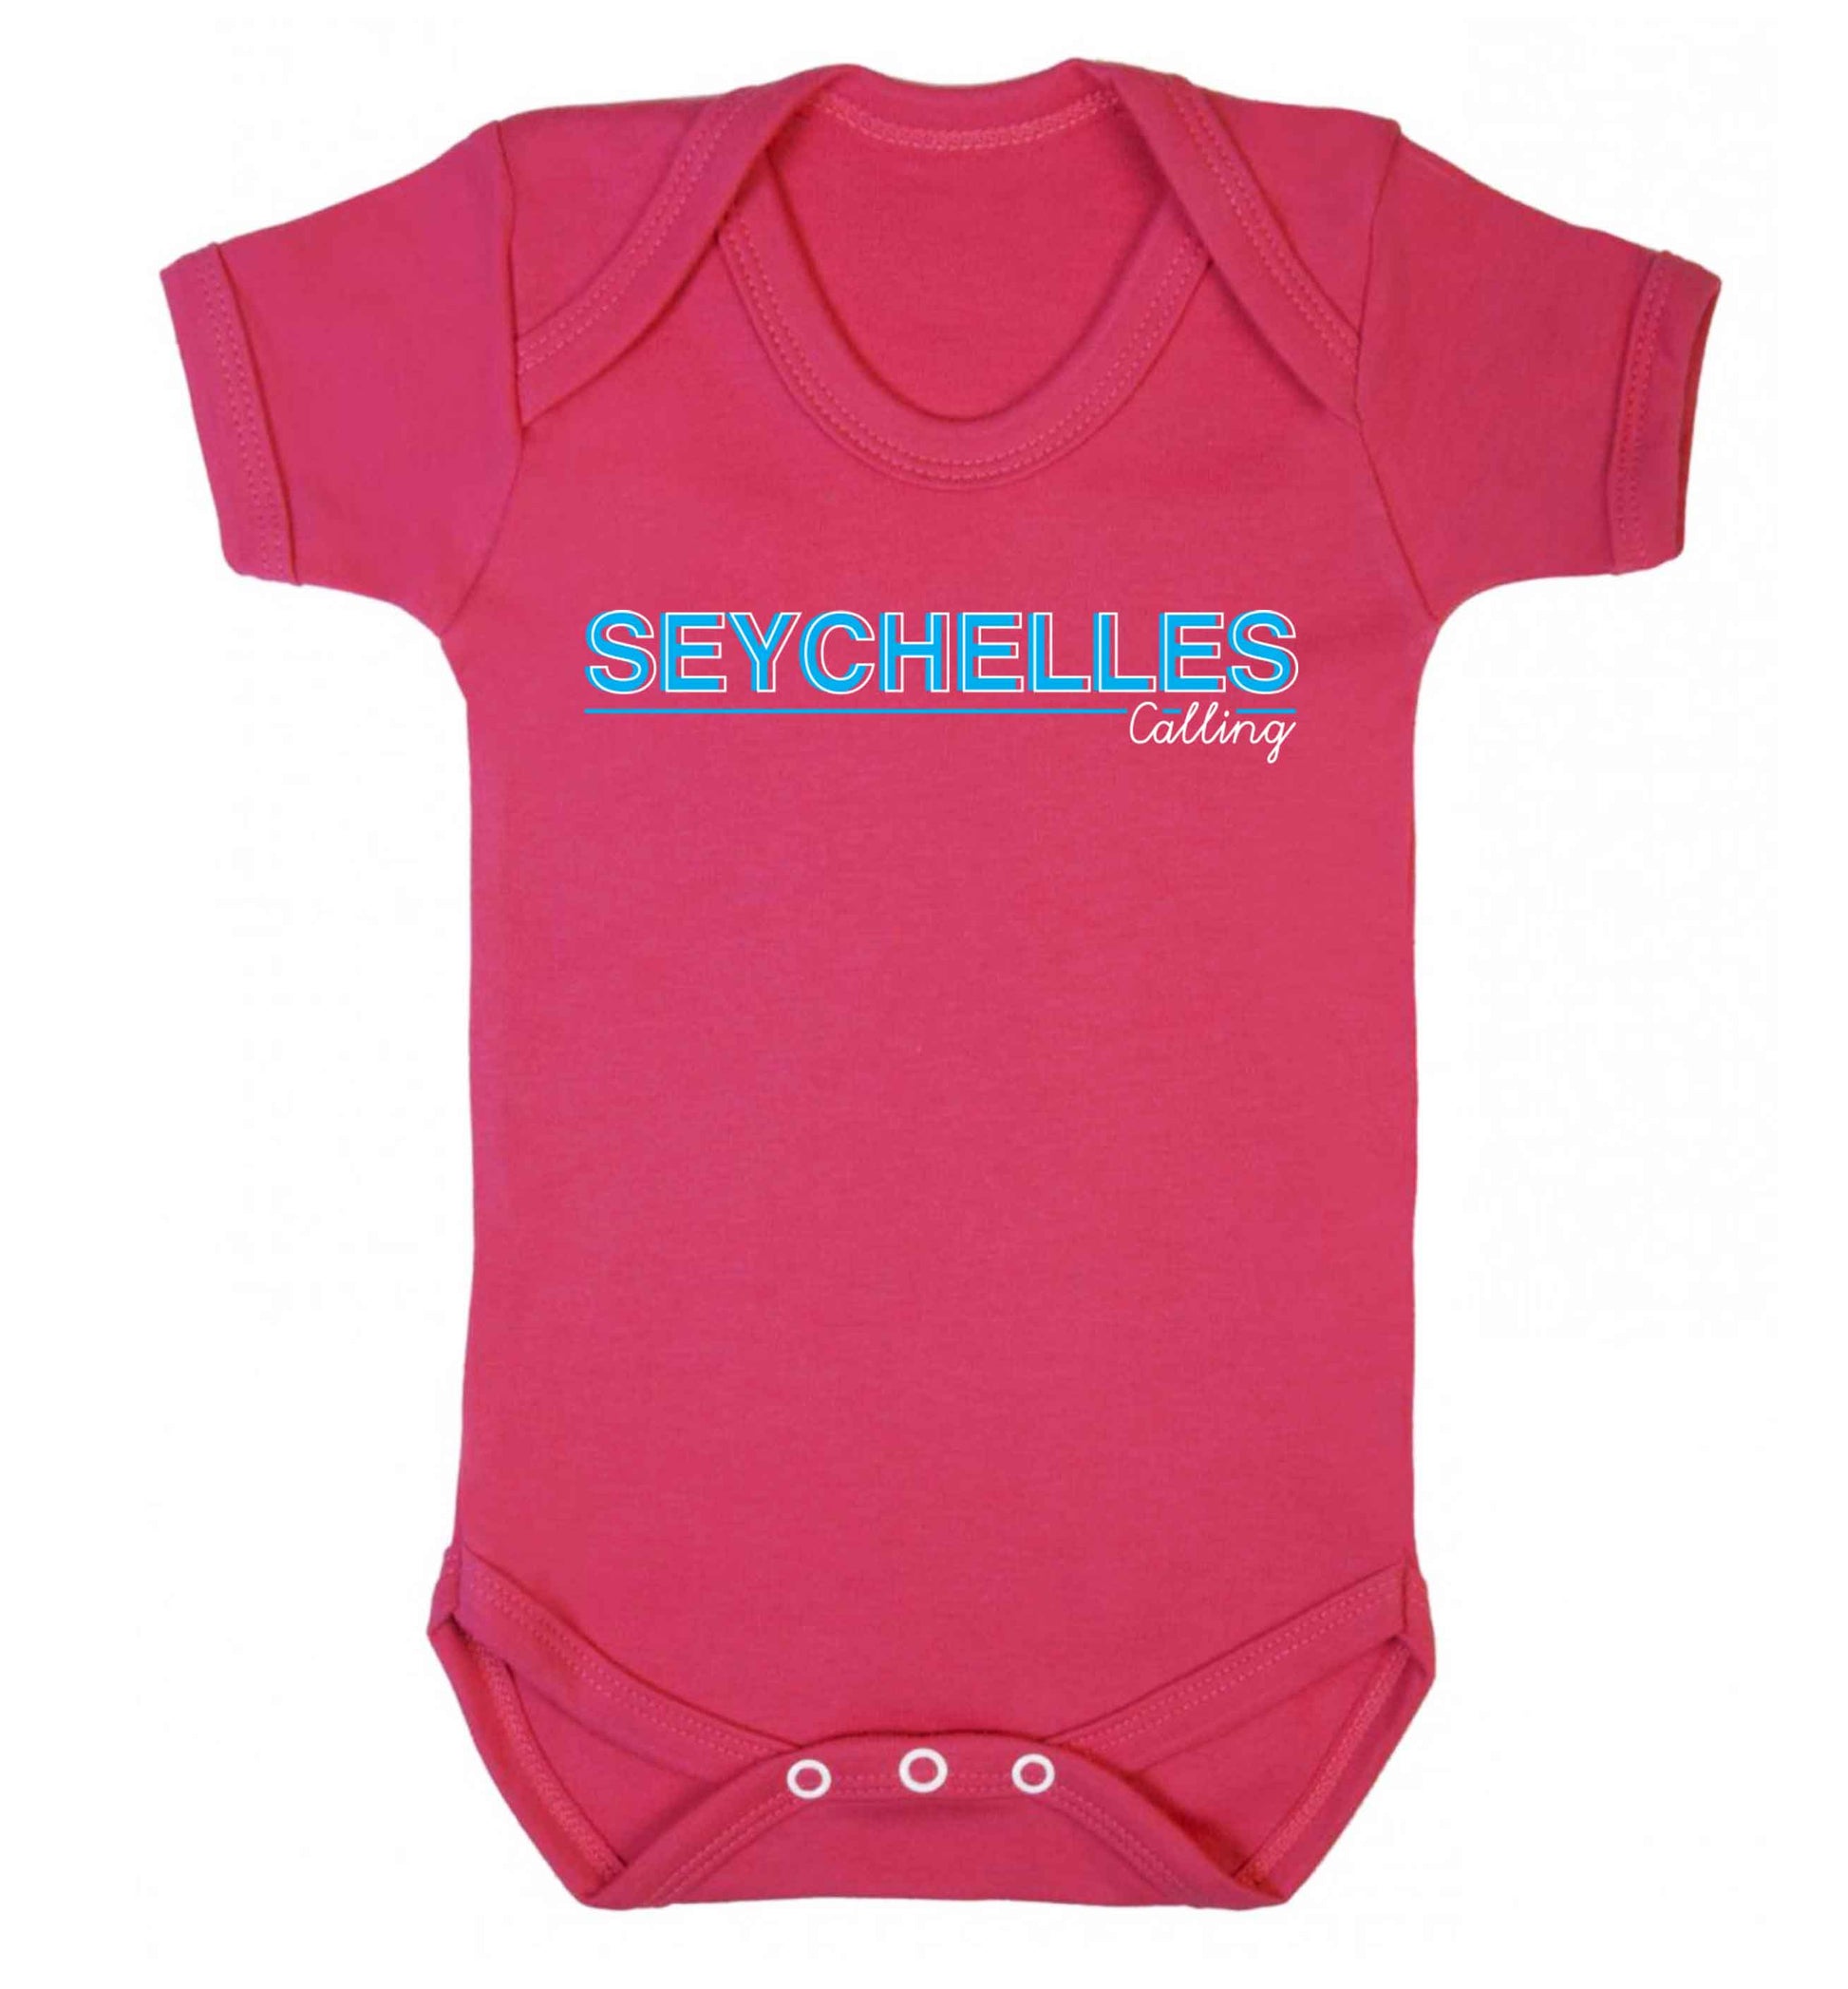 Seychelles calling Baby Vest dark pink 18-24 months